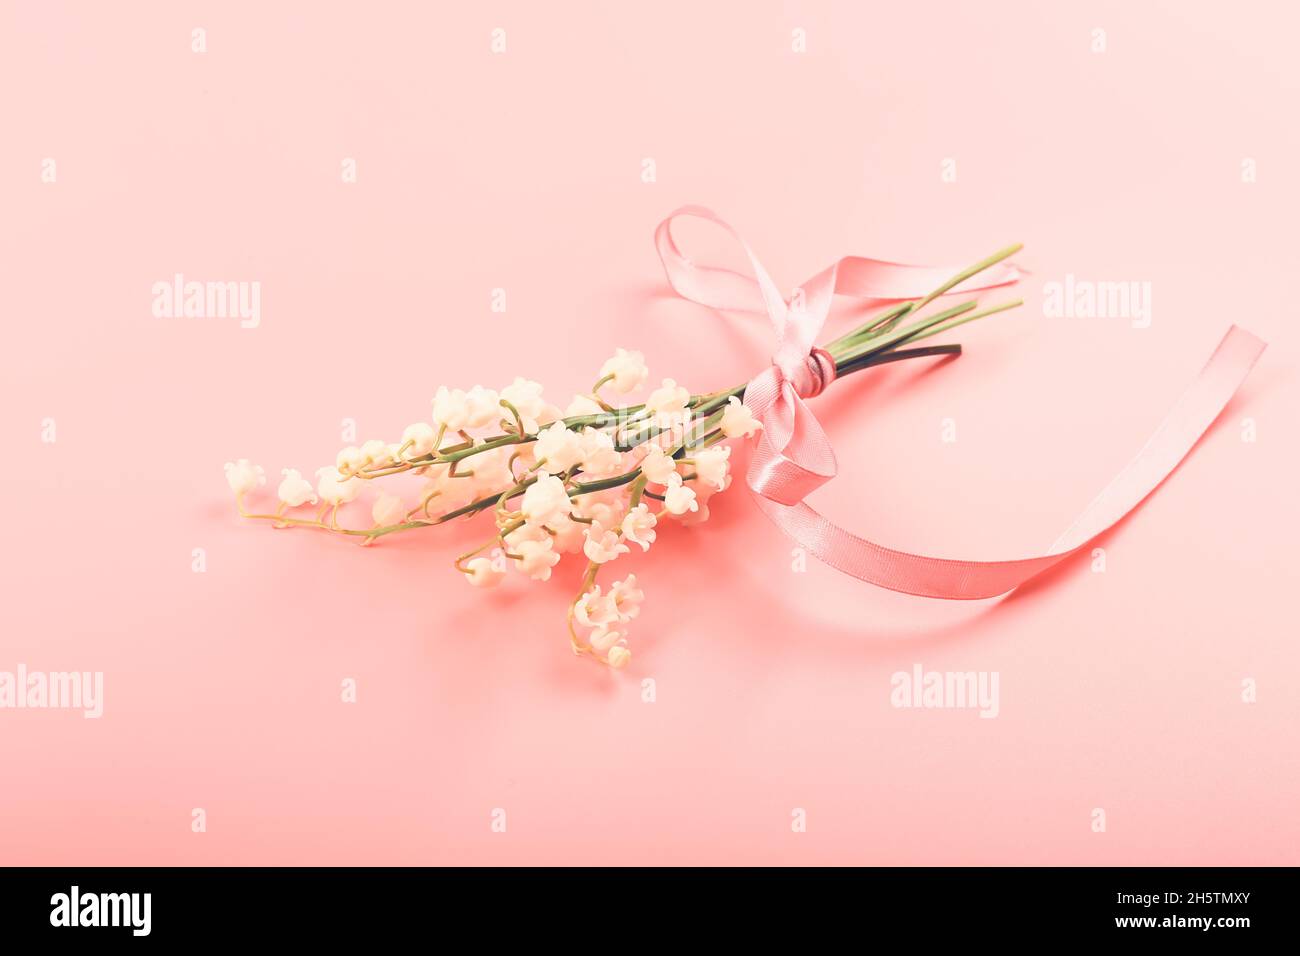 Maiglöckchen, gebunden mit einem rosa Band auf einem rosa Hintergrund. Zartes Federkonzept Stockfoto